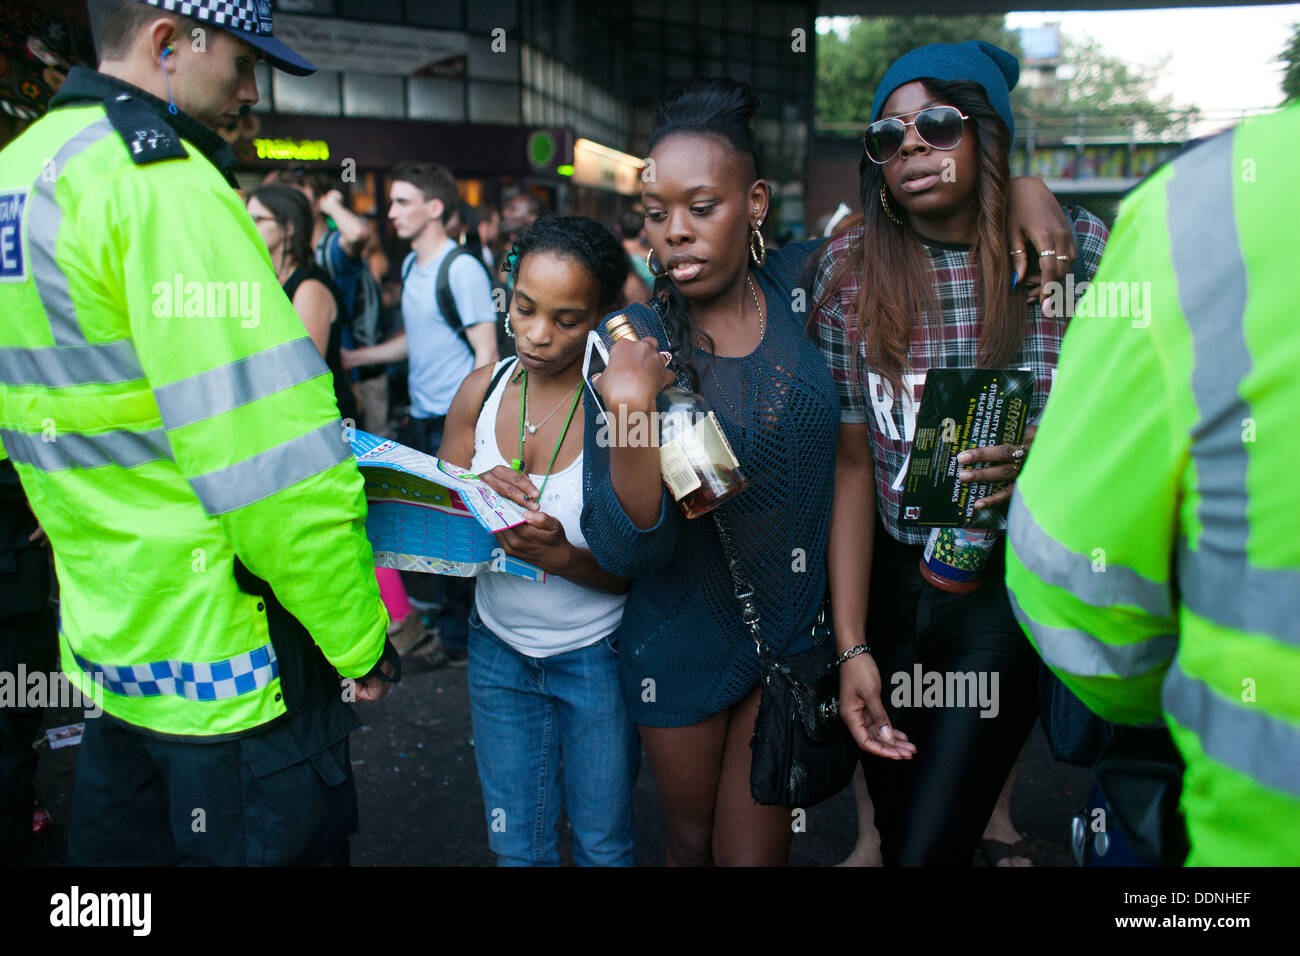 Eine Frau bitten um Richtung, wie zwei junge schwarze Mädchen mit einer Flasche Ofwhiskey in ihren Händen ihren Weg durch die Polizeilinien schieben. Stockfoto